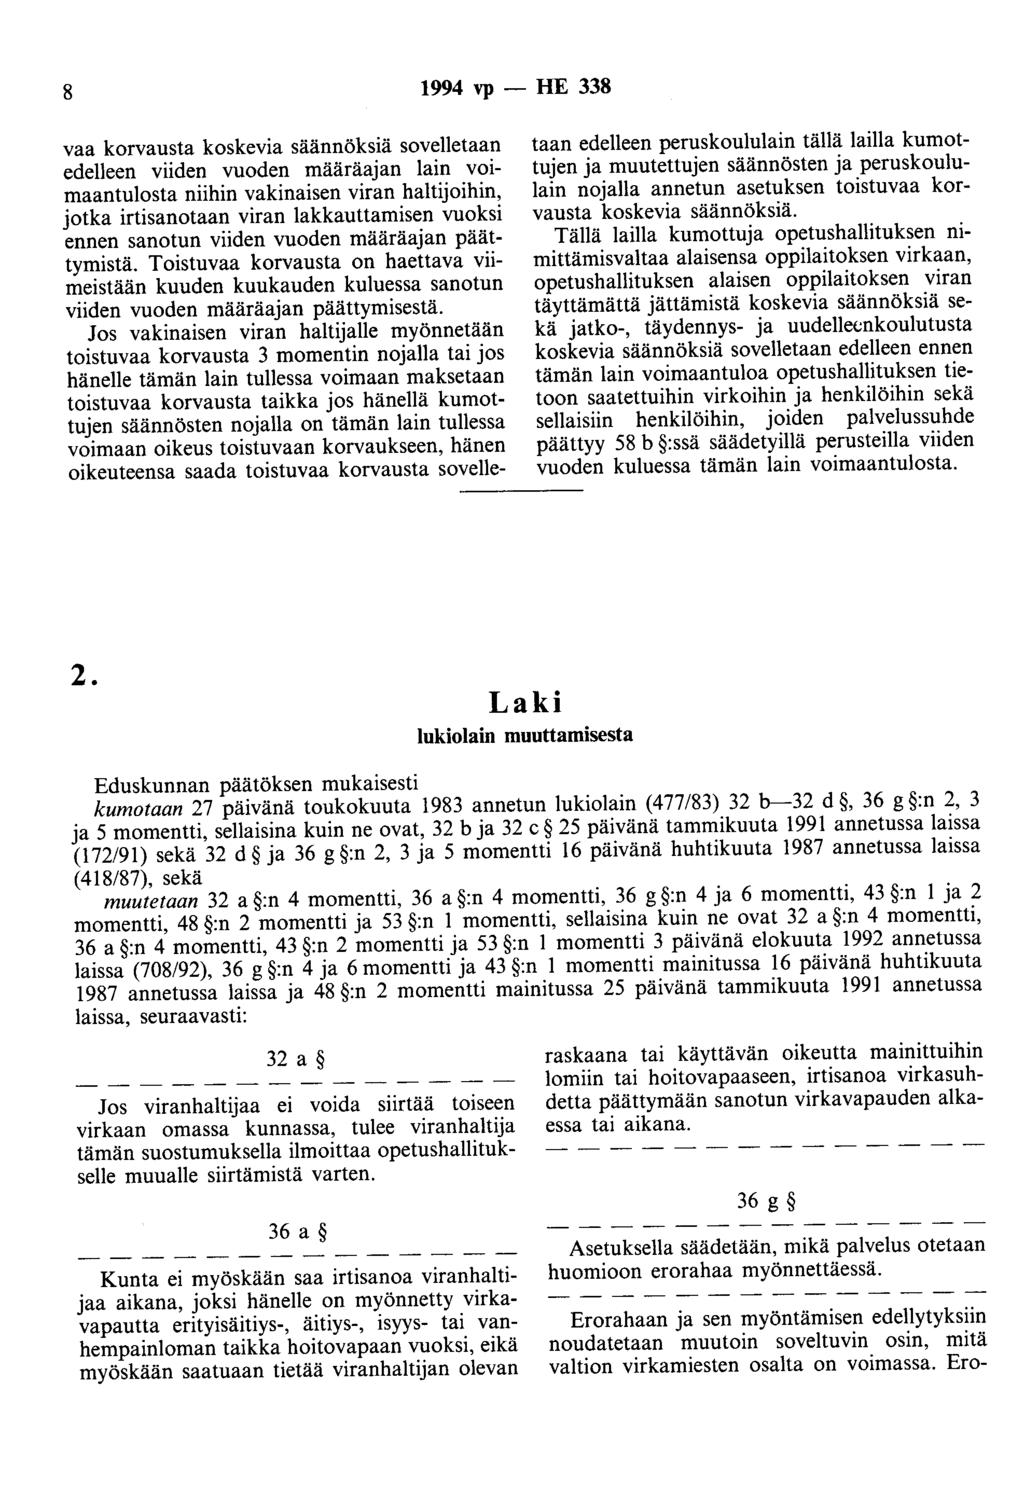 8 1994 vp- HE 338 vaa korvausta koskevia säännöksiä sovelletaan edelleen viiden vuoden määräajan lain voimaantulosta niihin vakinaisen viran haltijoihin, jotka irtisanotaan viran lakkauttamisen